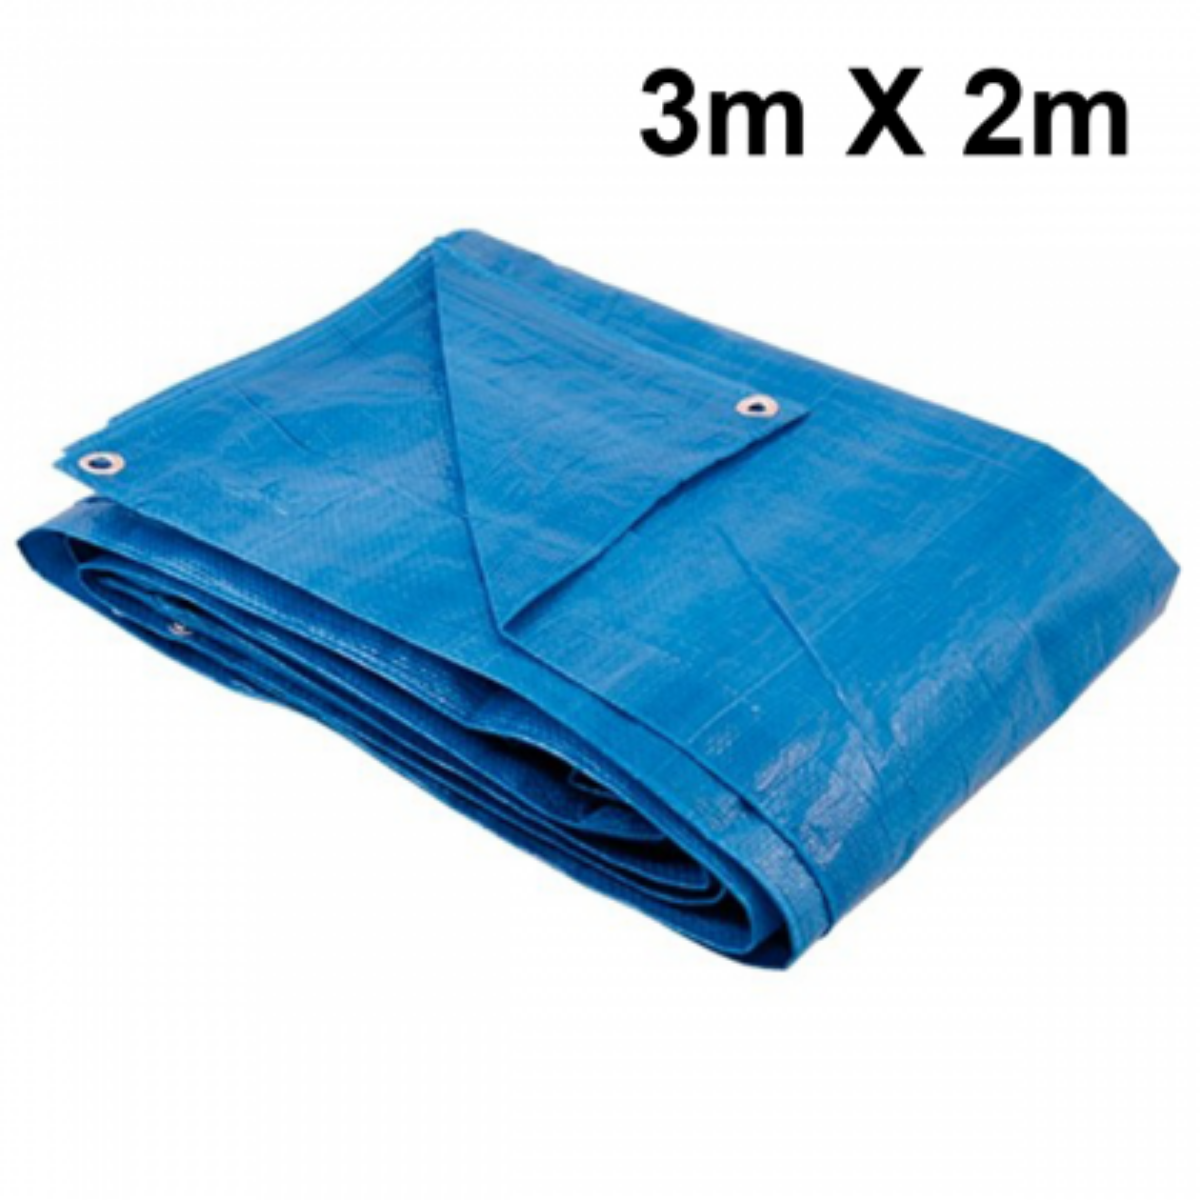 Lona 3x2 Azul Impermeável Carreteiro Piscina 200 Micras Grossa Reforçada - 1